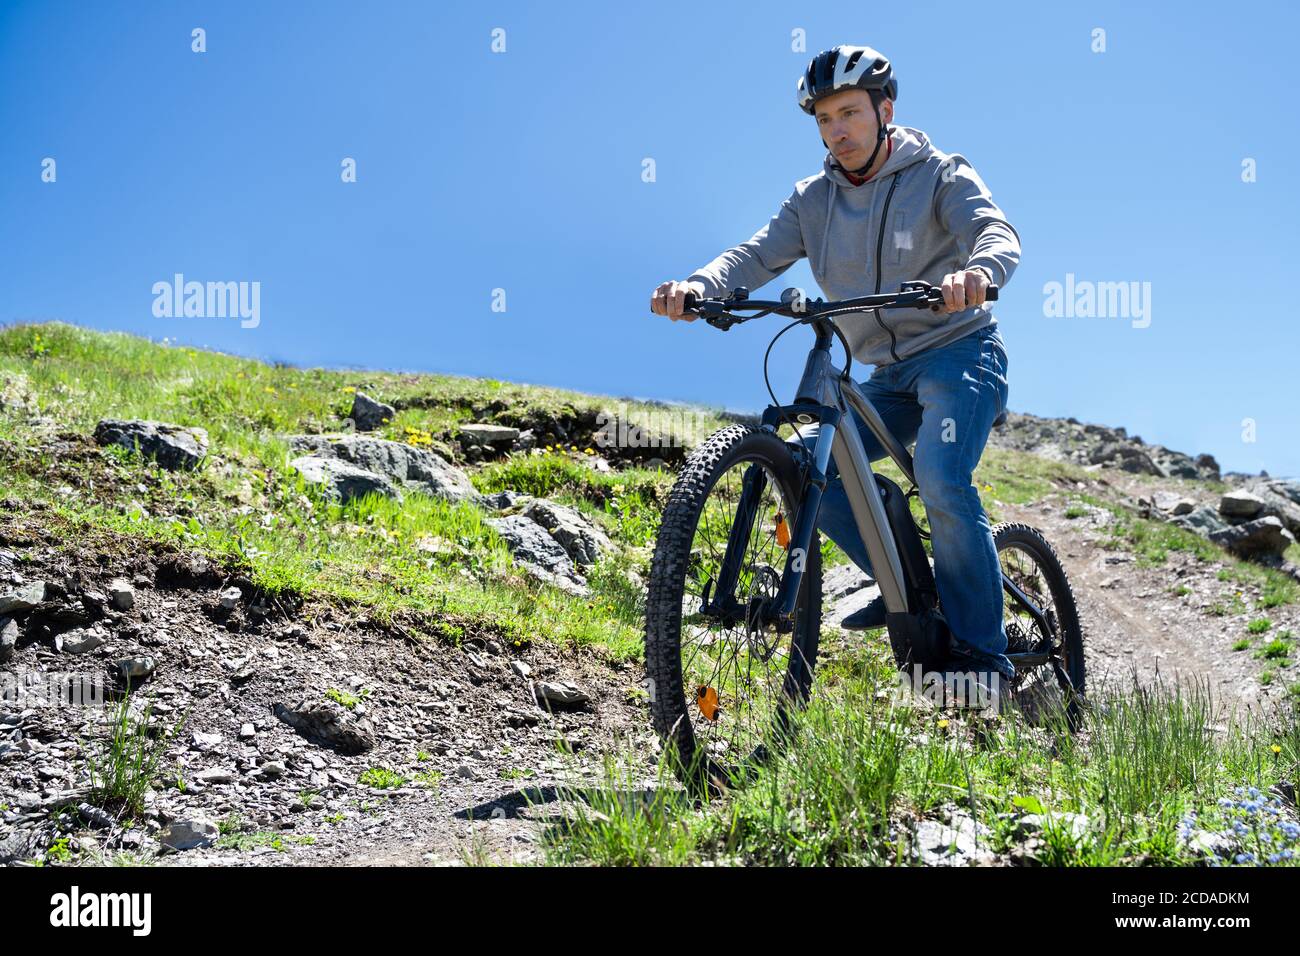 Hombre En Bicicleta En Una Carretera Entre Las Hermosas Montañas Fotos,  retratos, imágenes y fotografía de archivo libres de derecho. Image 71655972